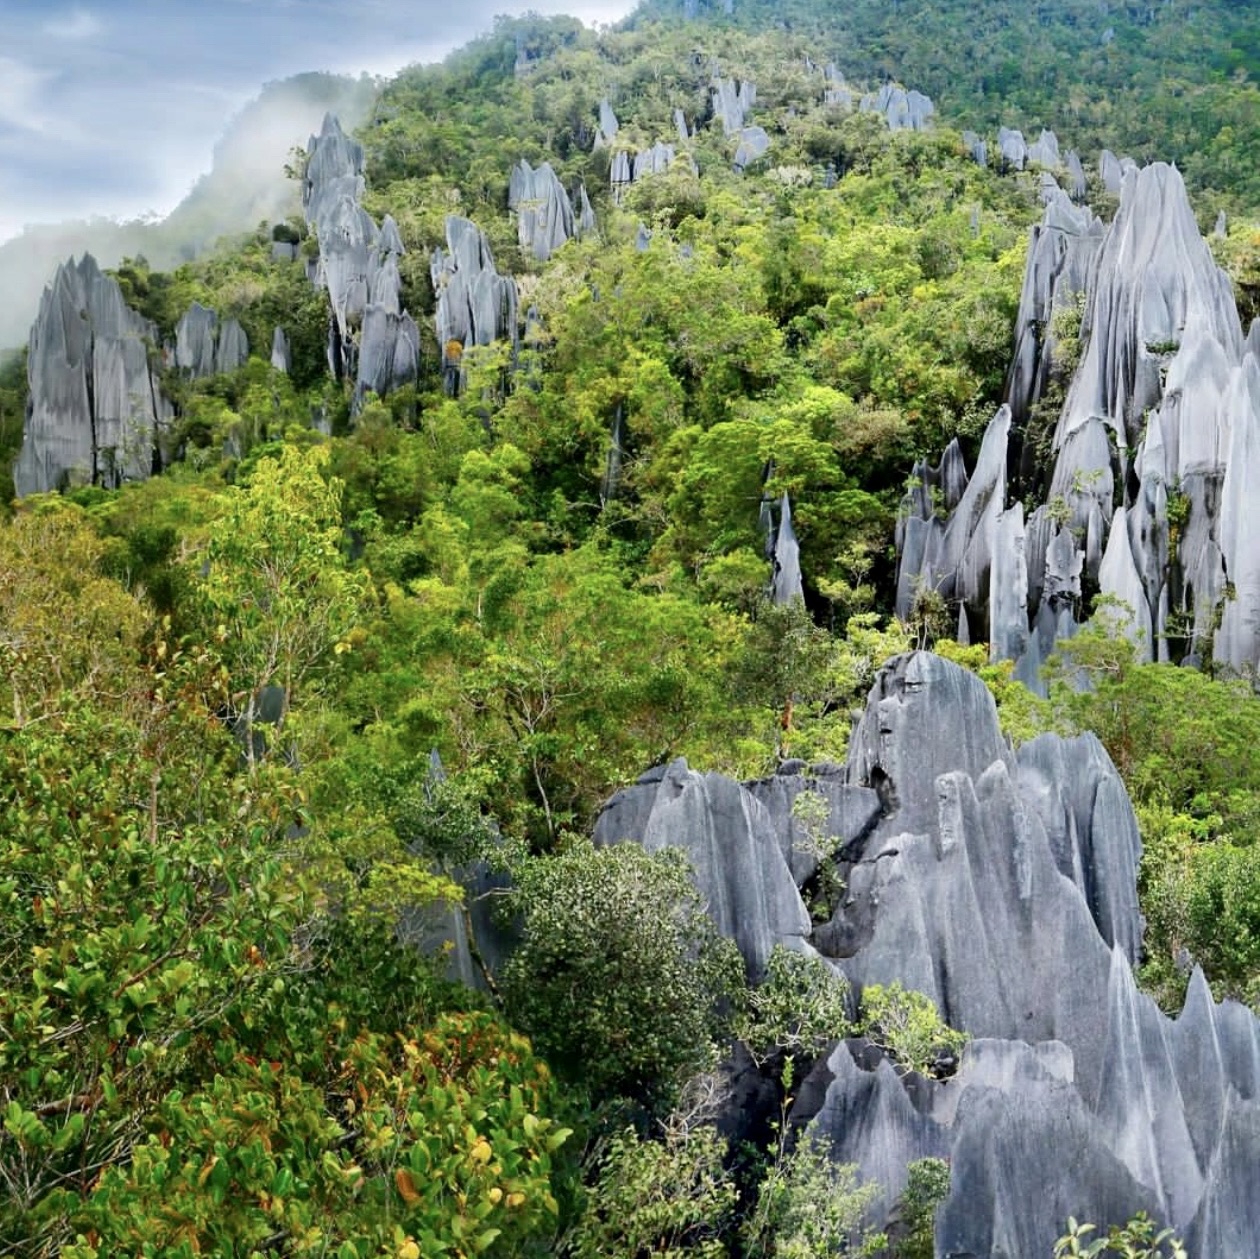 Gunung Mulu 国家公园 - 婆罗洲,马来西亚